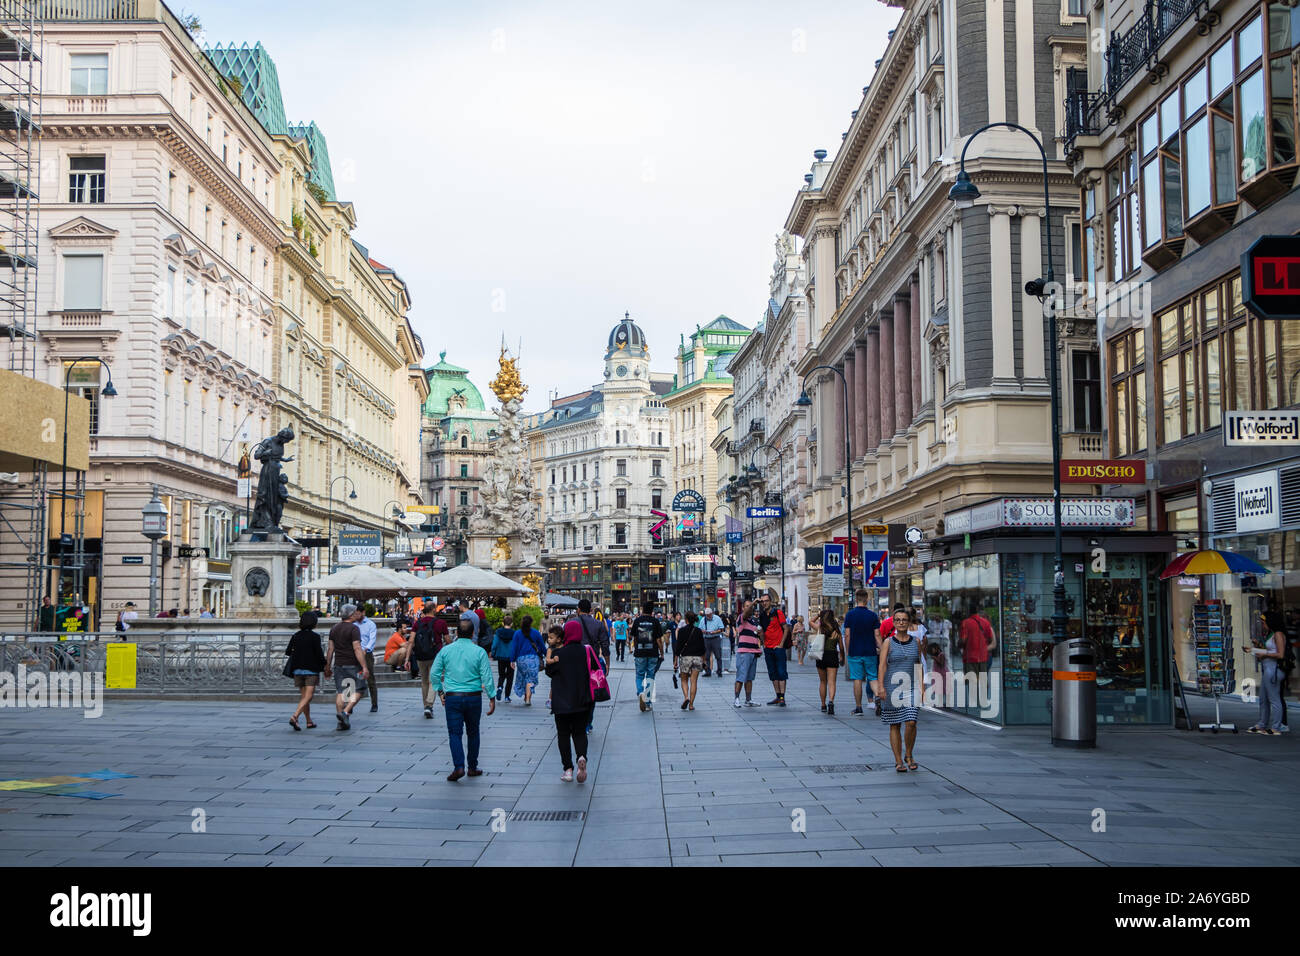 Vienna, Austria - September 1, 2019: Grabenstrasse - main shopping street in downtown Vienna. People walk through the pedestrian zone. Austria Stock Photo